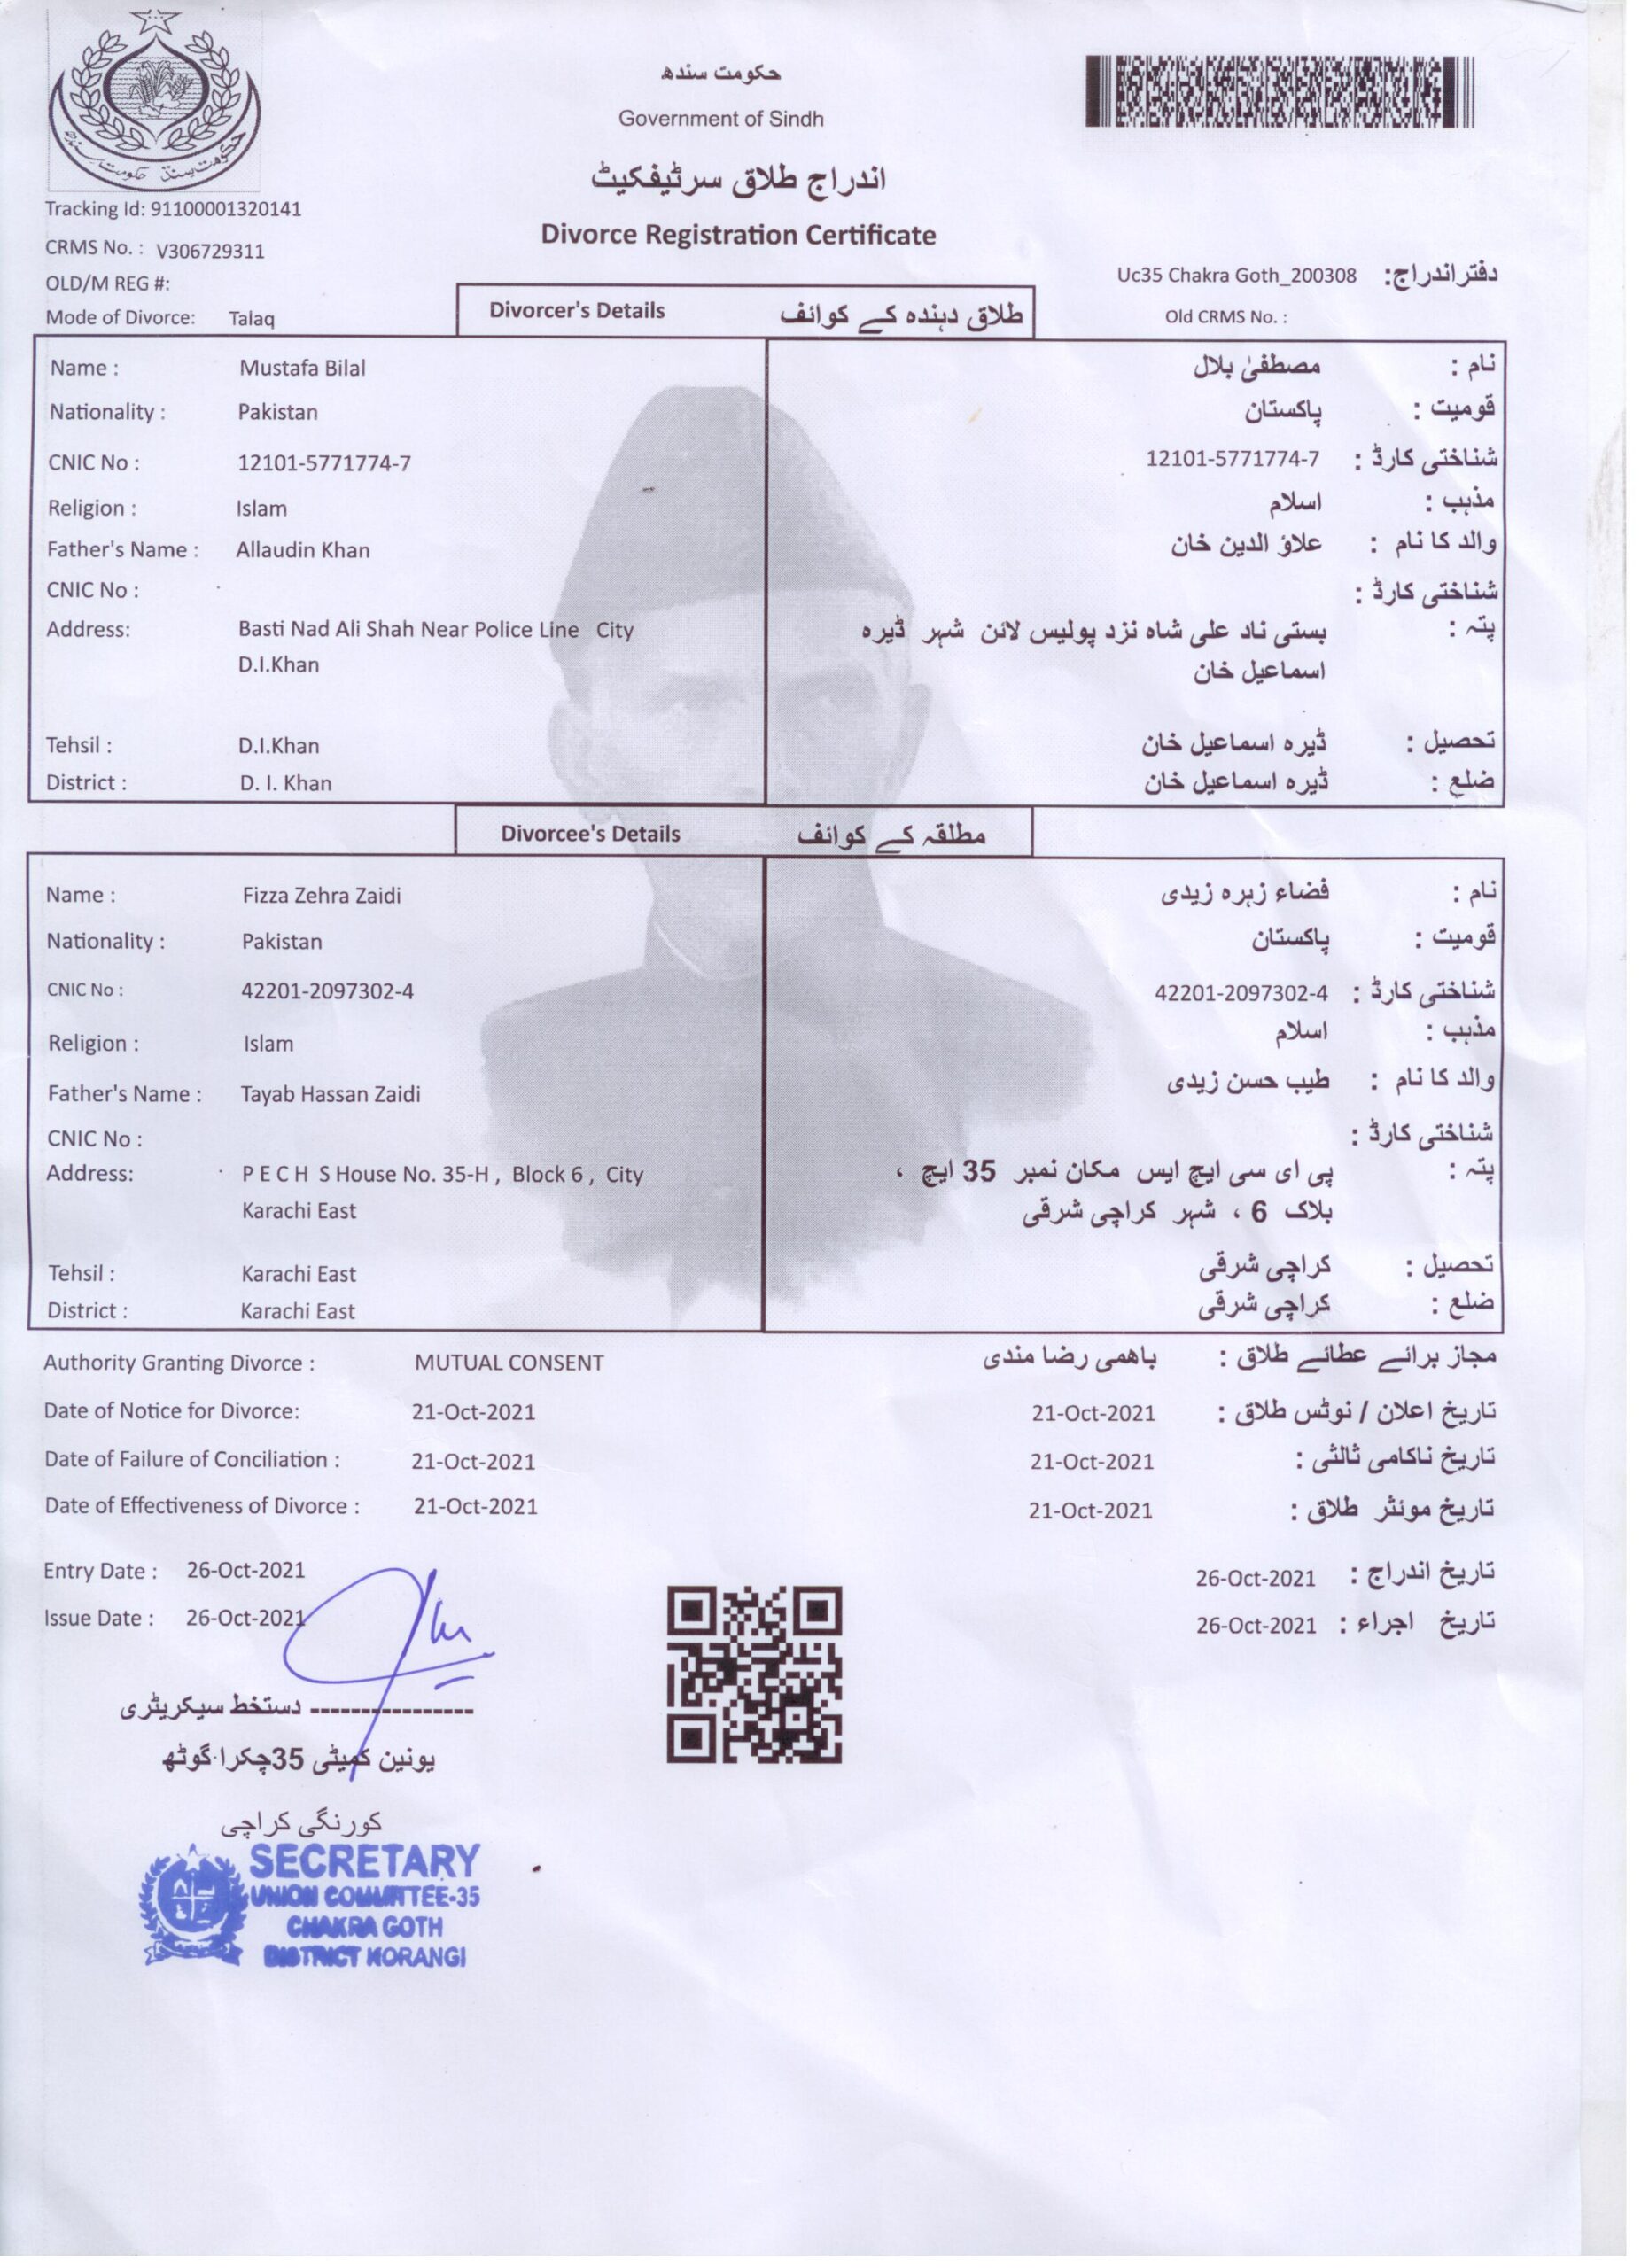 NADRA Divorce Certificate in Pakistan Court Marriage in Pakistan